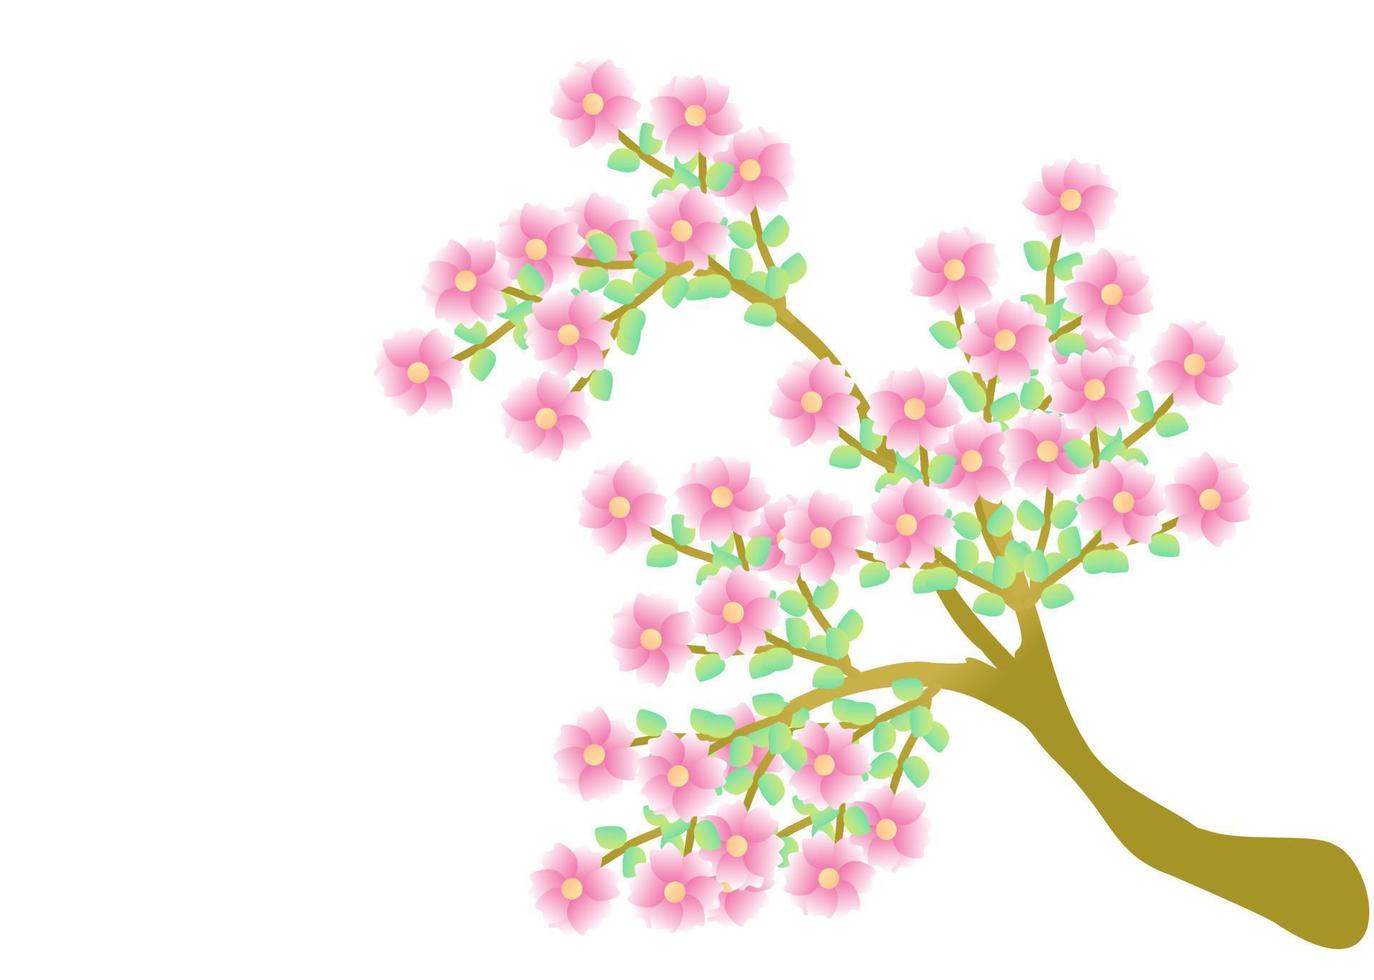 Kirschblütenzweig mit Sakura-Blume. Sakura auf weißem Hintergrund. blühender vektor der kirschblütenblume. rosa sakura-blumenhintergrund.